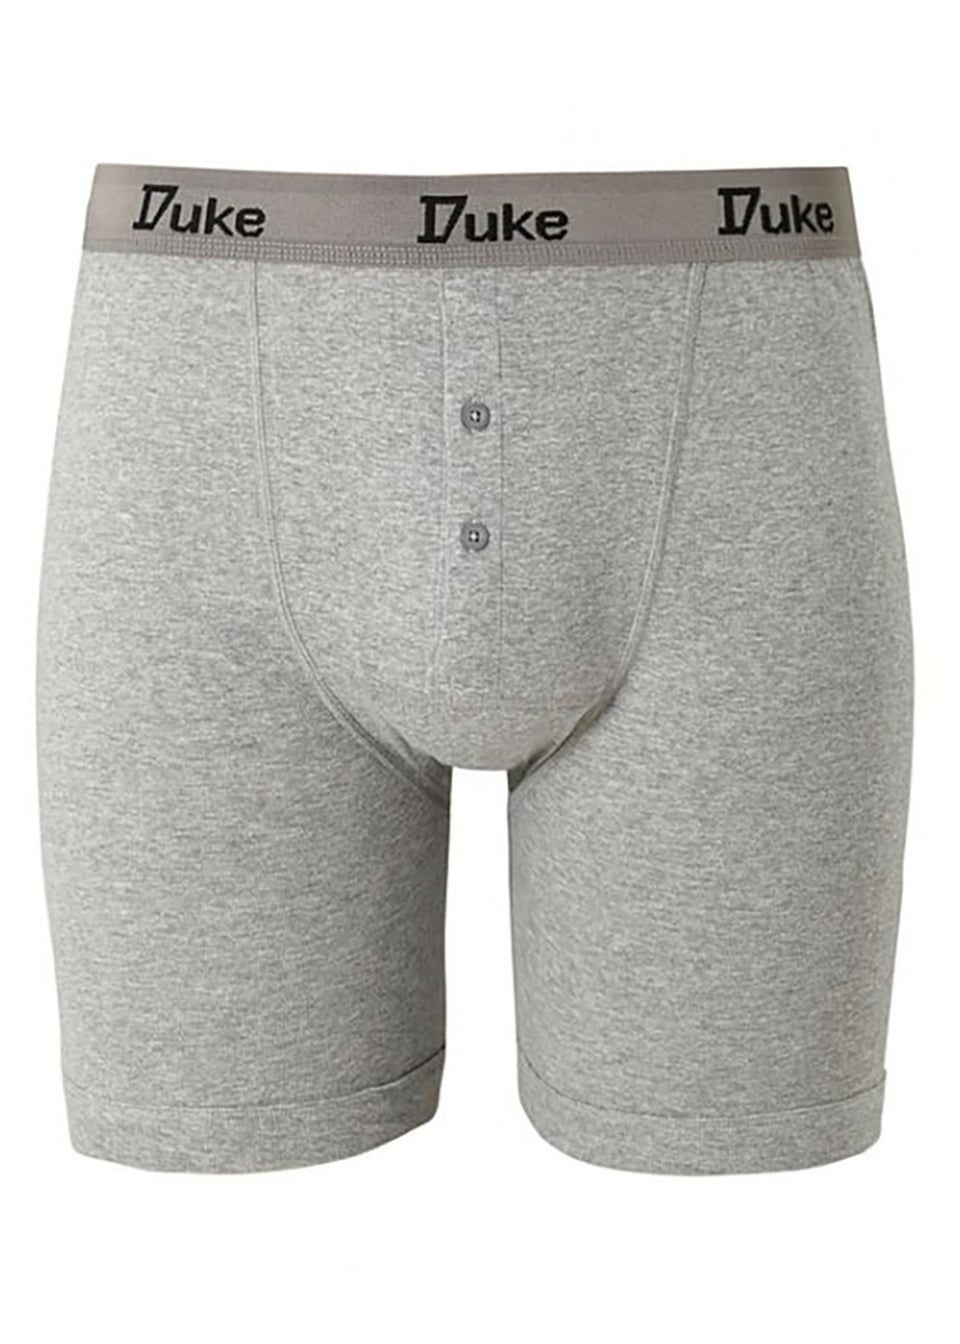 Duke Black/Grey London Driver Kingsize Cotton Boxer Shorts (Pack of 3)